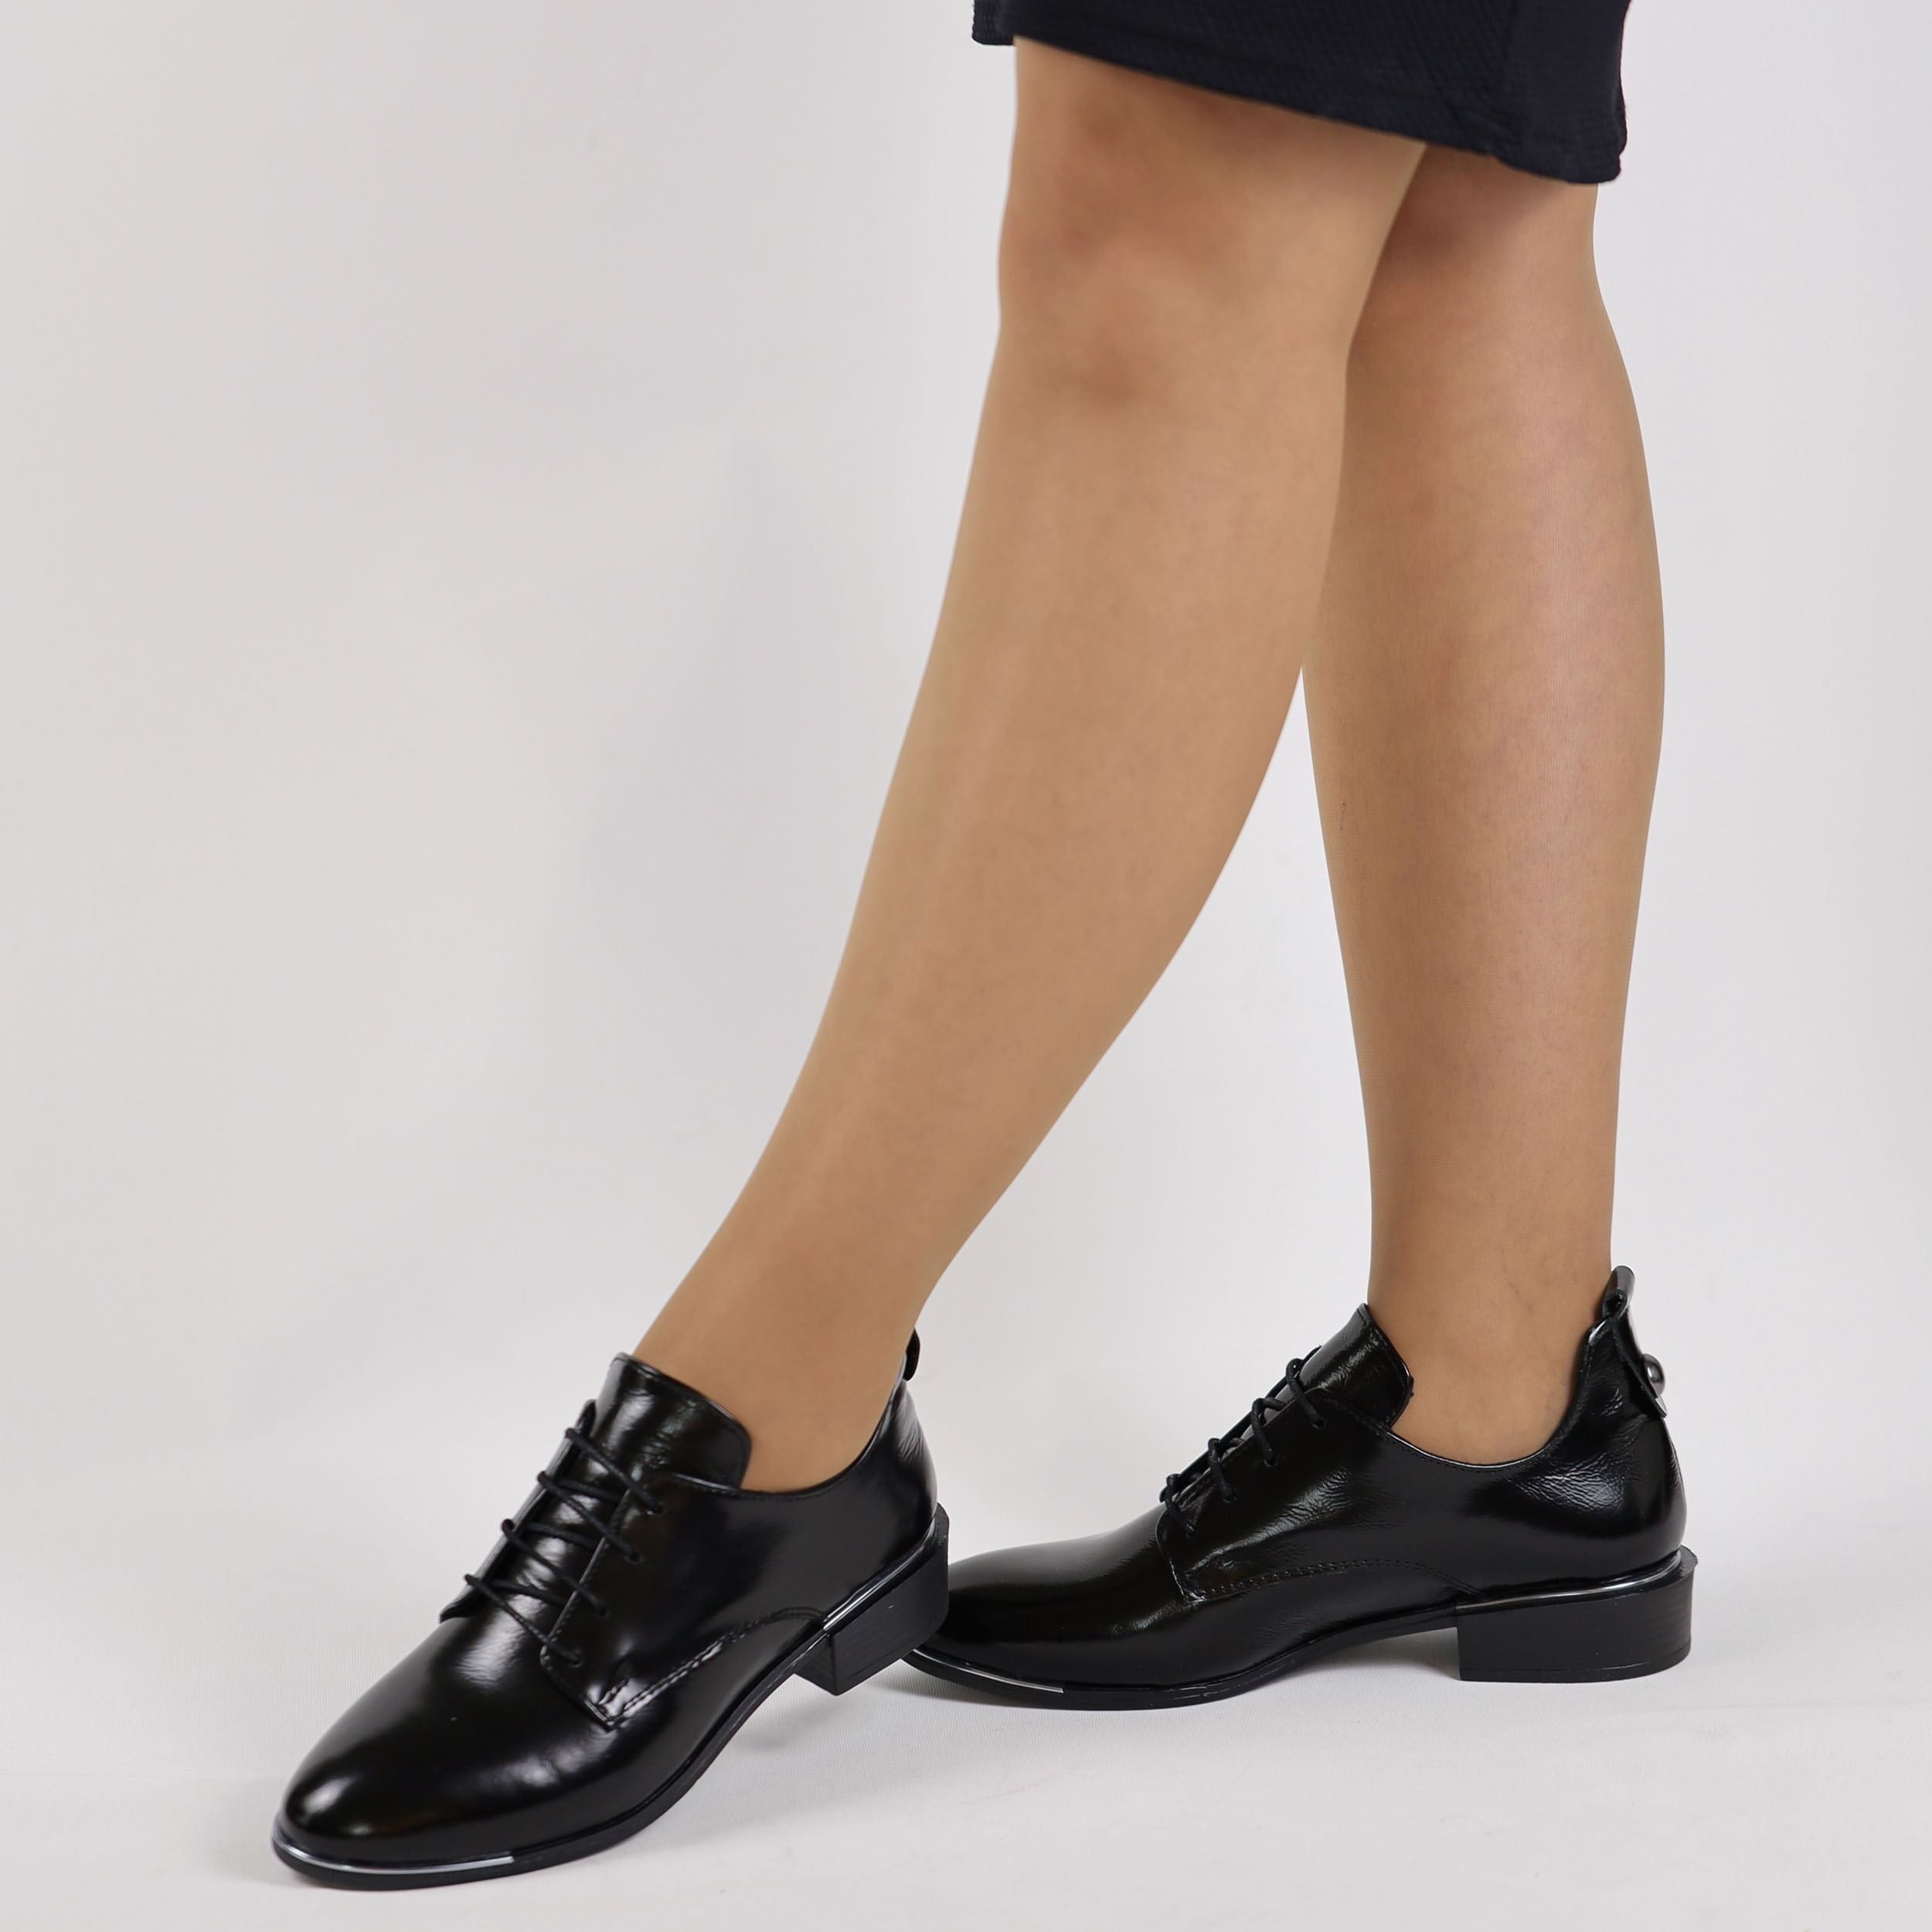 TwoEgoist Kadın Hakiki Kırışık Rugan Deri Günlük Klasik Kısa Topuklu Rahat Ayakkabı, Renk: Siyah, Beden: 36